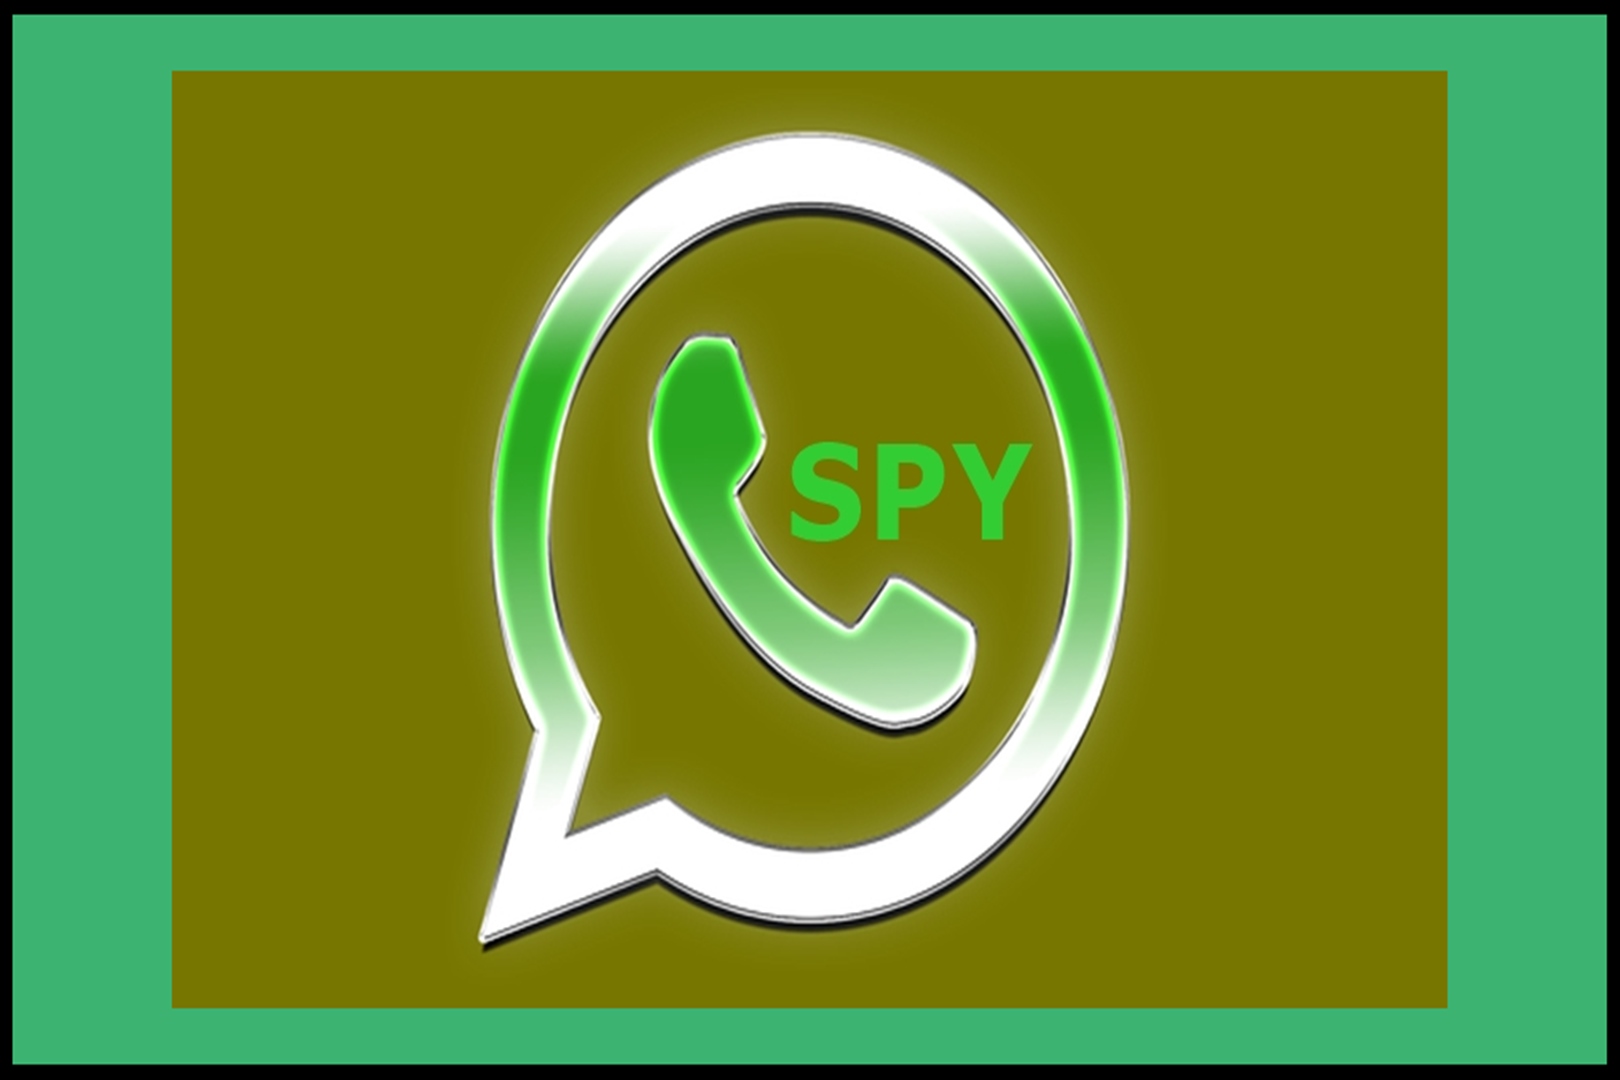 Download Aplikasi Penyadap WA Social Spy Whatsapp Bongkar Chat Mudah Hanya 50 MB, Lengkap Dengan Cara Log In